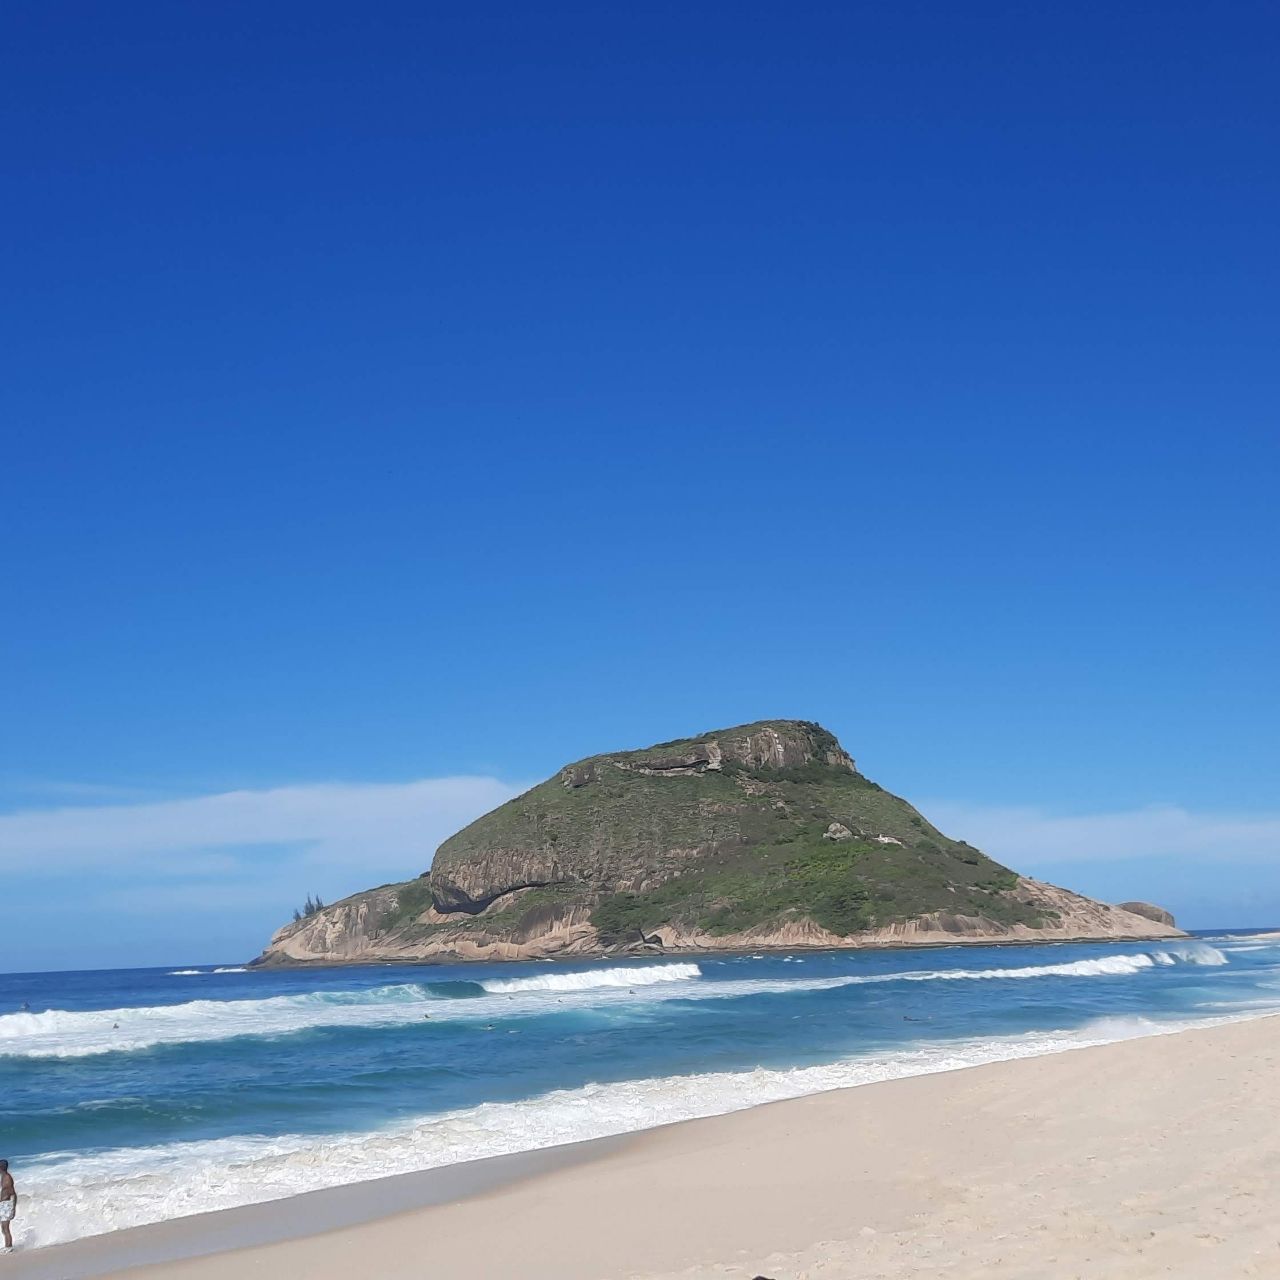 Pedra do Pontal - From Praia do Recreio, Brazil